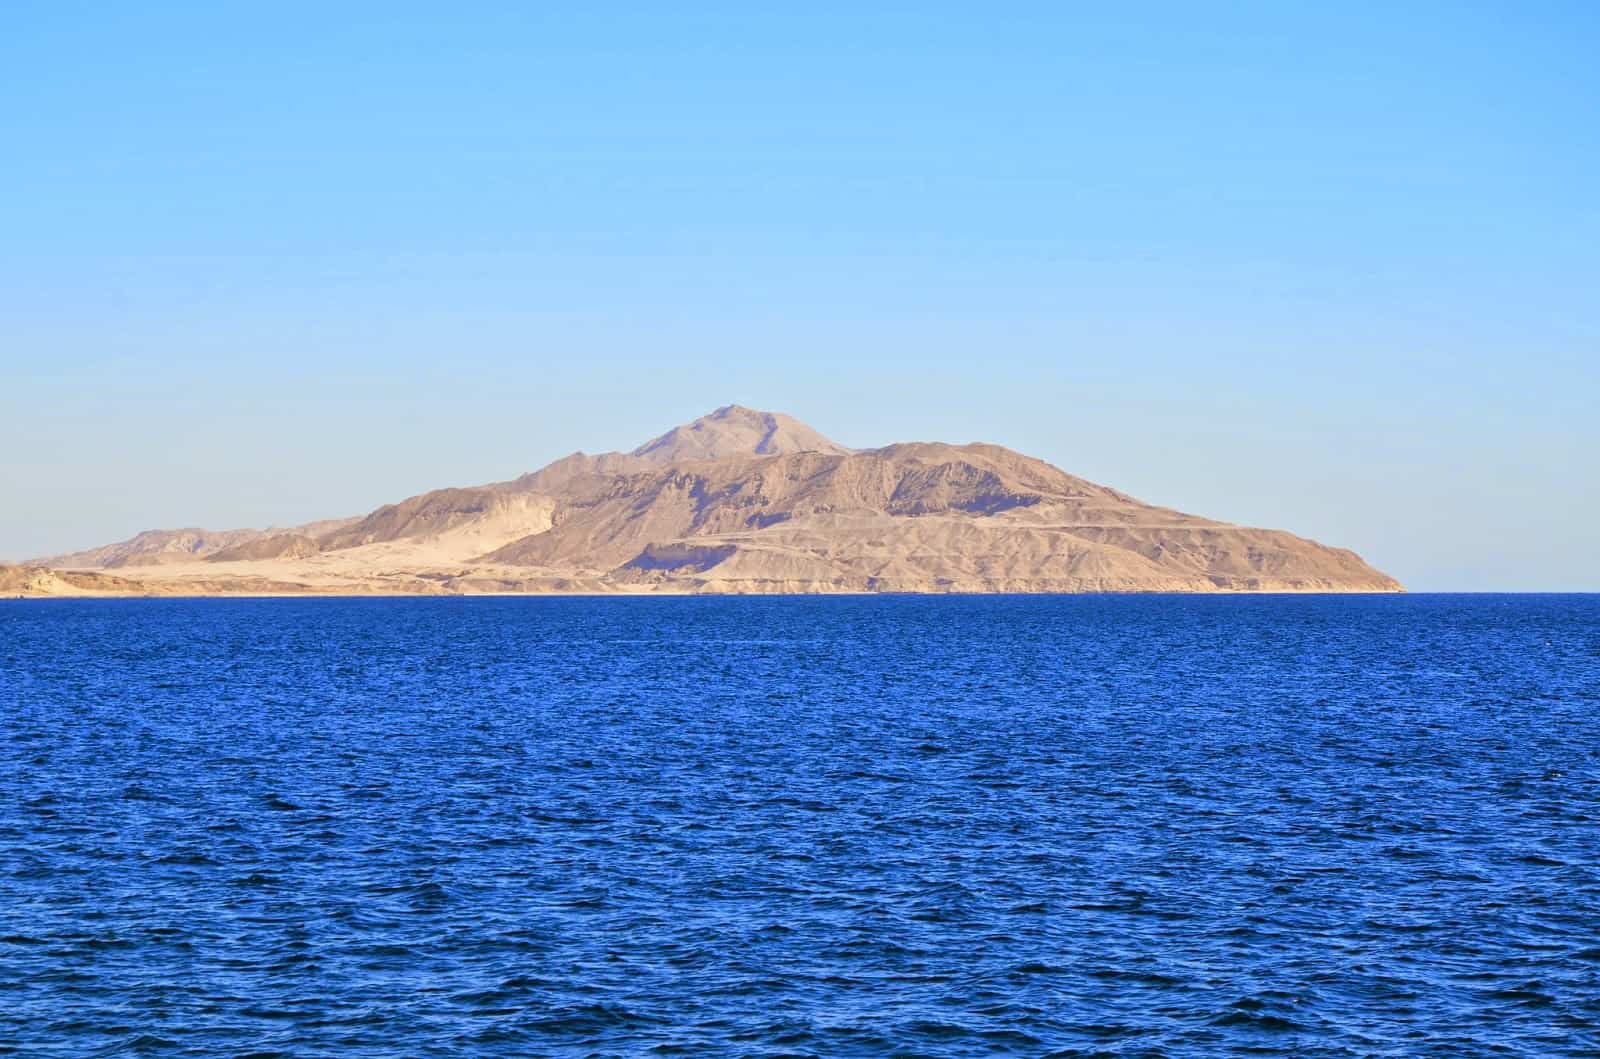 Tiran Island in the Red Sea, Egypt